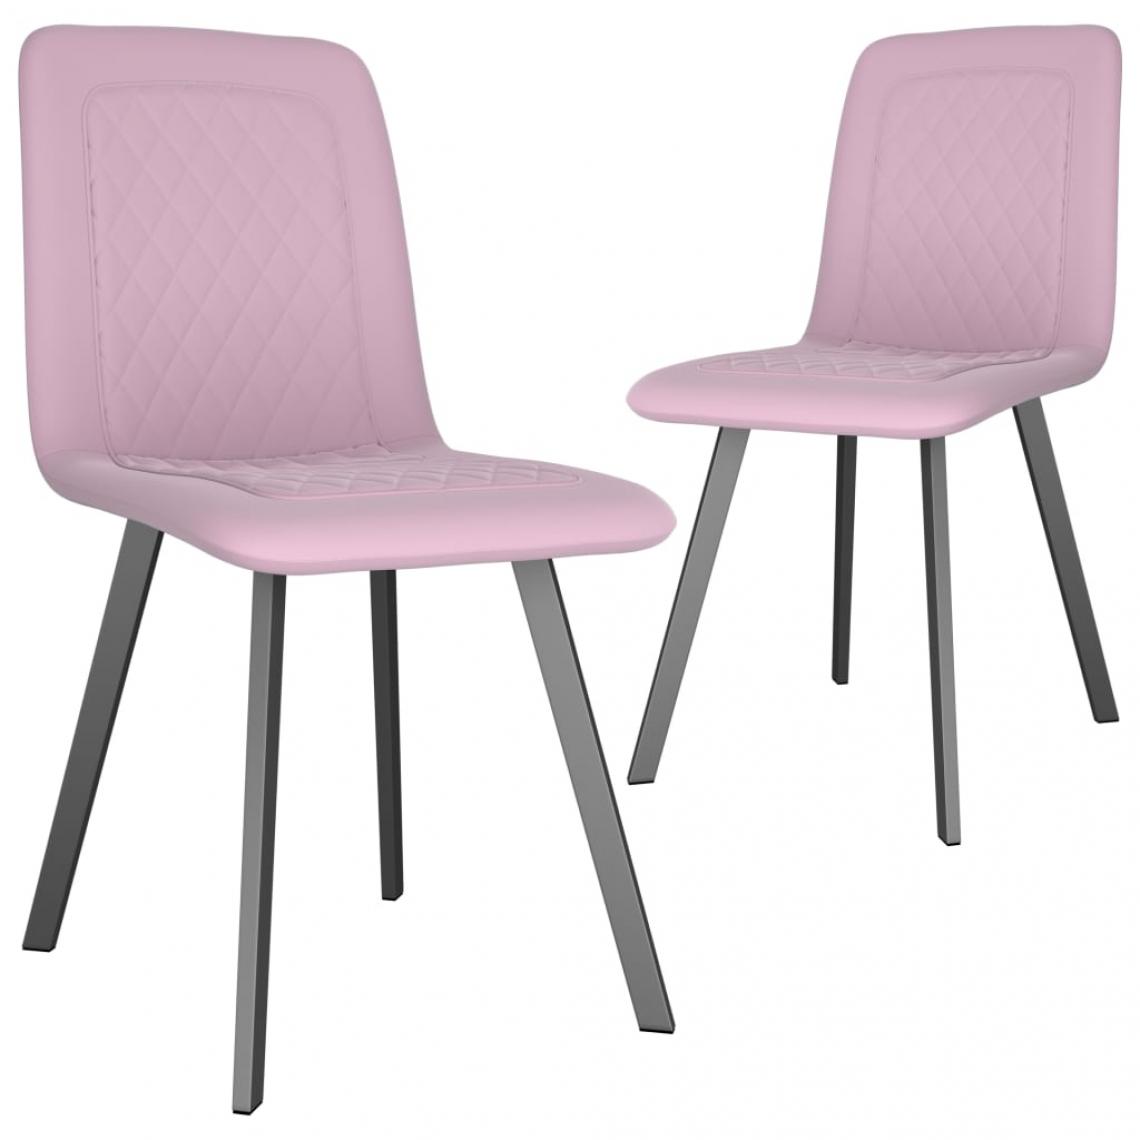 Decoshop26 - Lot de 2 chaises de salle à manger cuisine design moderne velours rose CDS020958 - Chaises